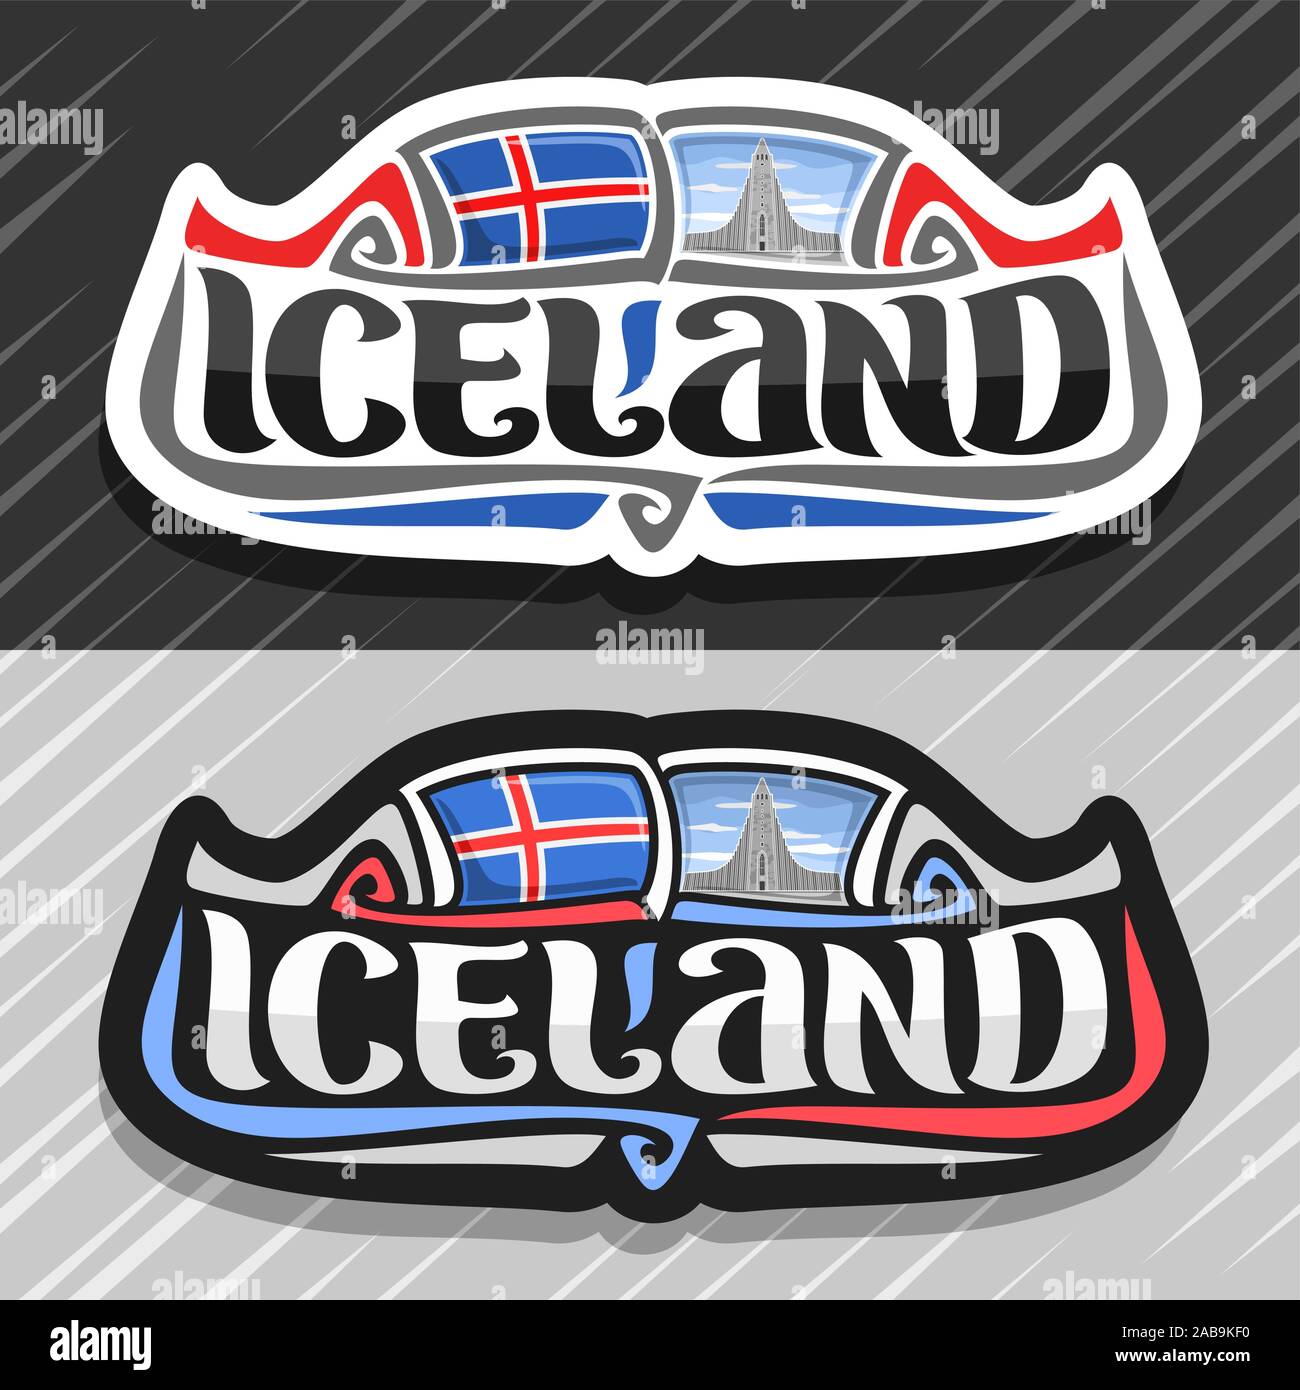 Logo vectoriel pour l'Islande, pays aimant frigo avec drapeau islandais, brosse d'origine font pour mot l'Islande et symbole national islandais - Hallgrimskirk Illustration de Vecteur